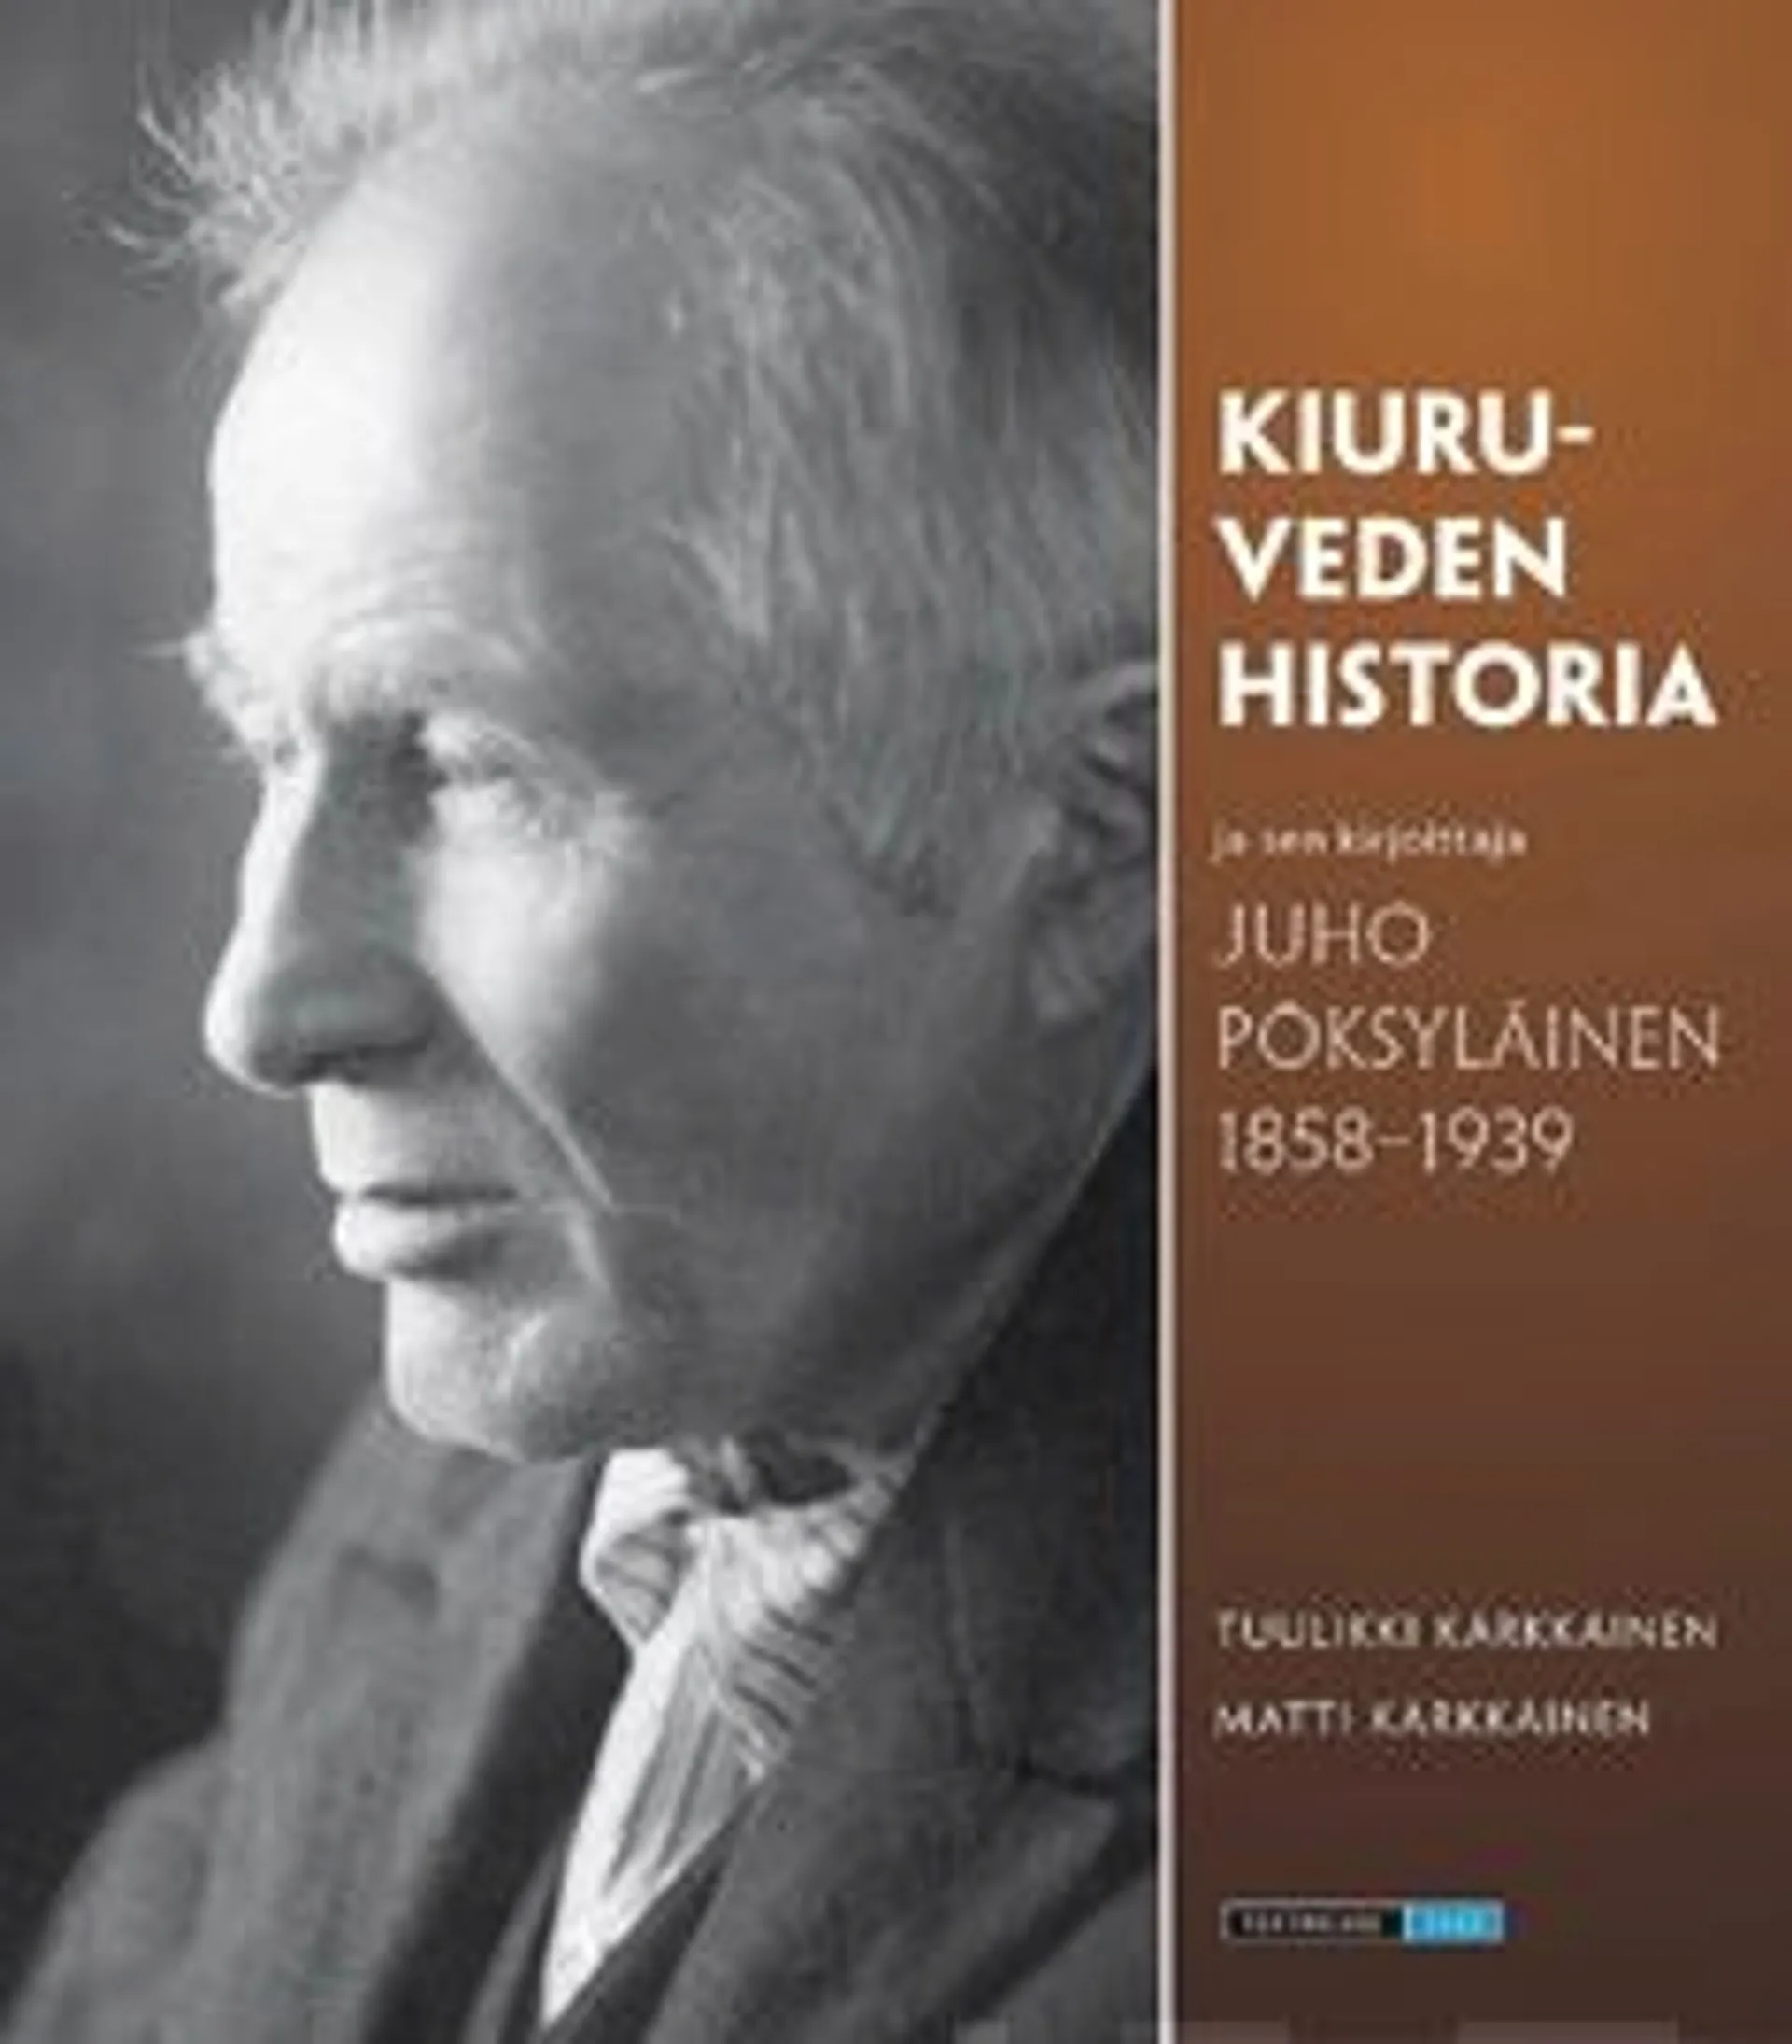 Kärkkäinen, Kiuruveden historia ja sen kirjoittaja Juho Pöksyläinen 1858-1939